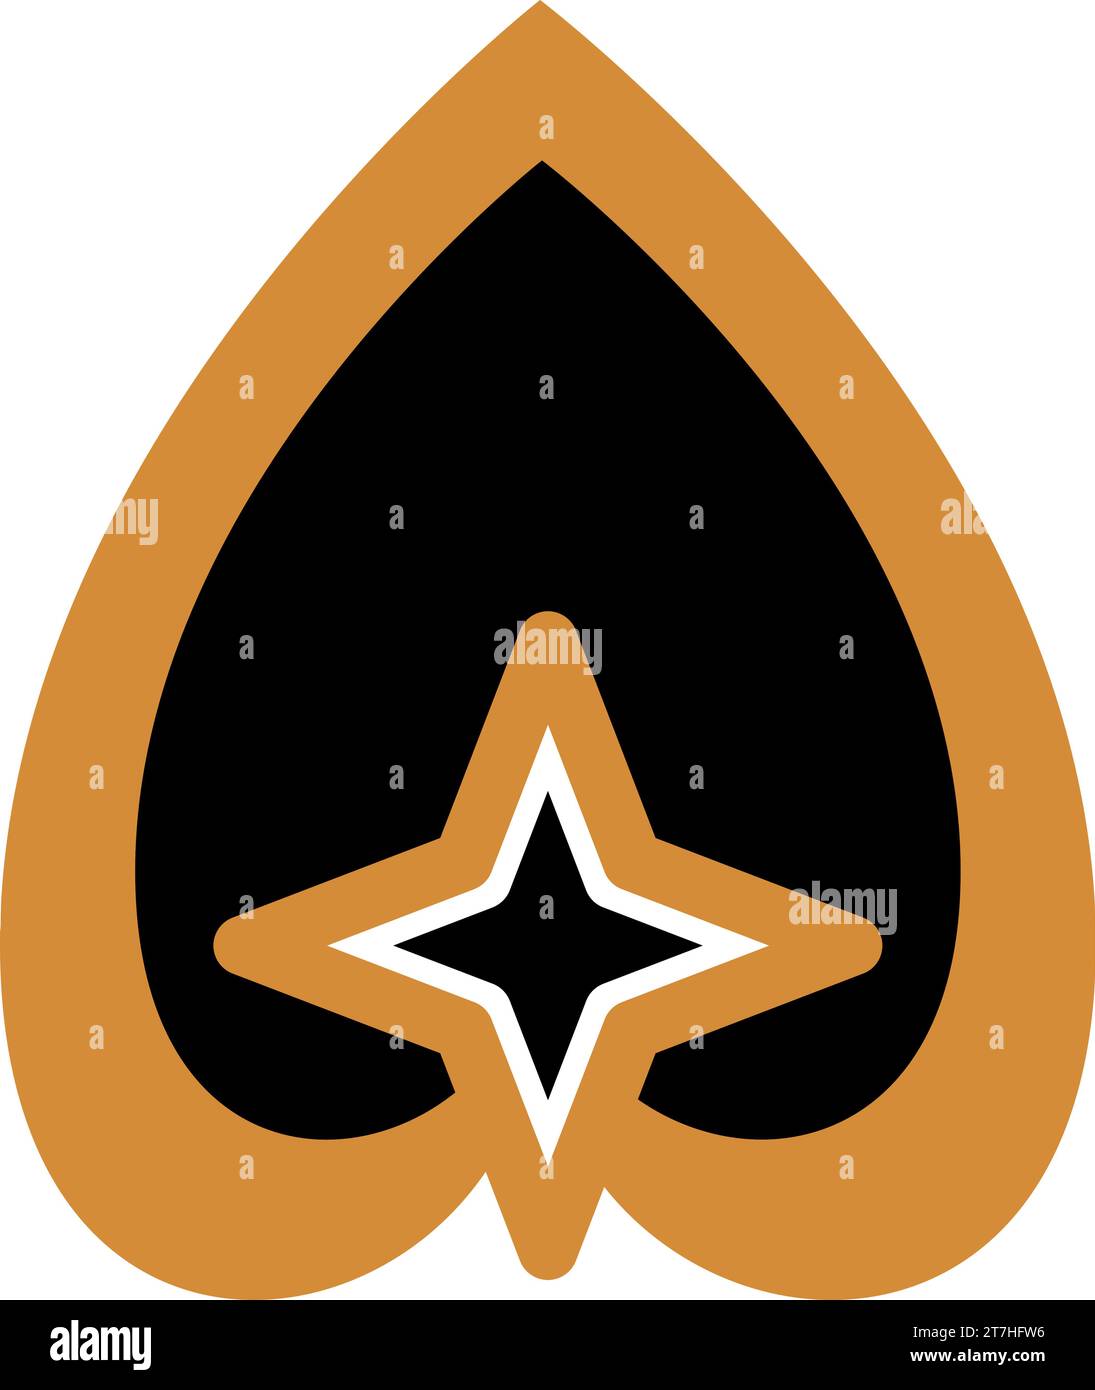 Luxuriöser Boho-Stil mit vier spitzen Sternen im Inneren des invertierten Herzsymbols in Schwarz- und Goldfarben. Religiös-mystisches Piktogramm. Heiliges Vektorzeichen isoliert o Stock Vektor